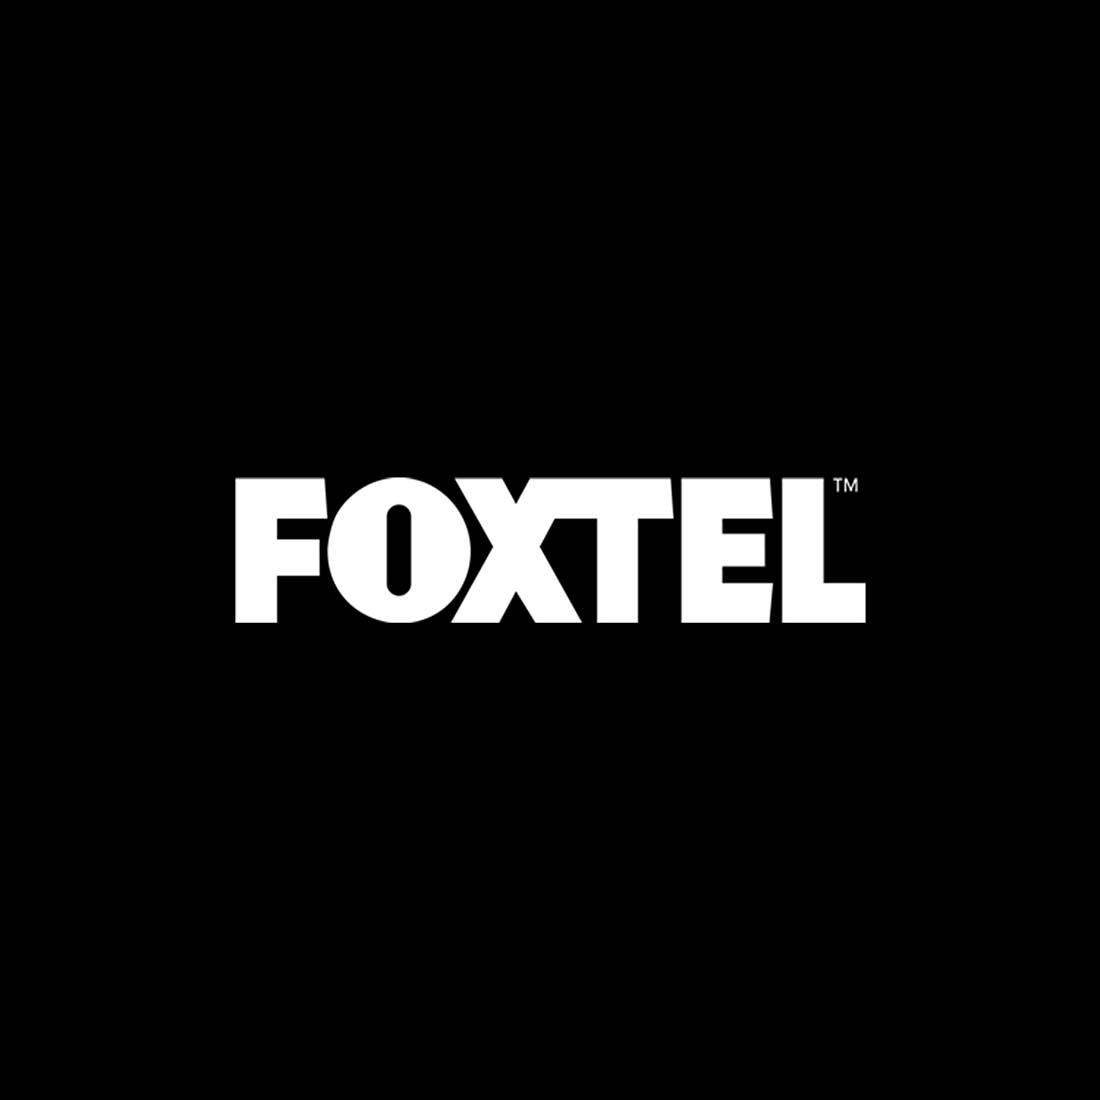 foxtel logo white.jpg